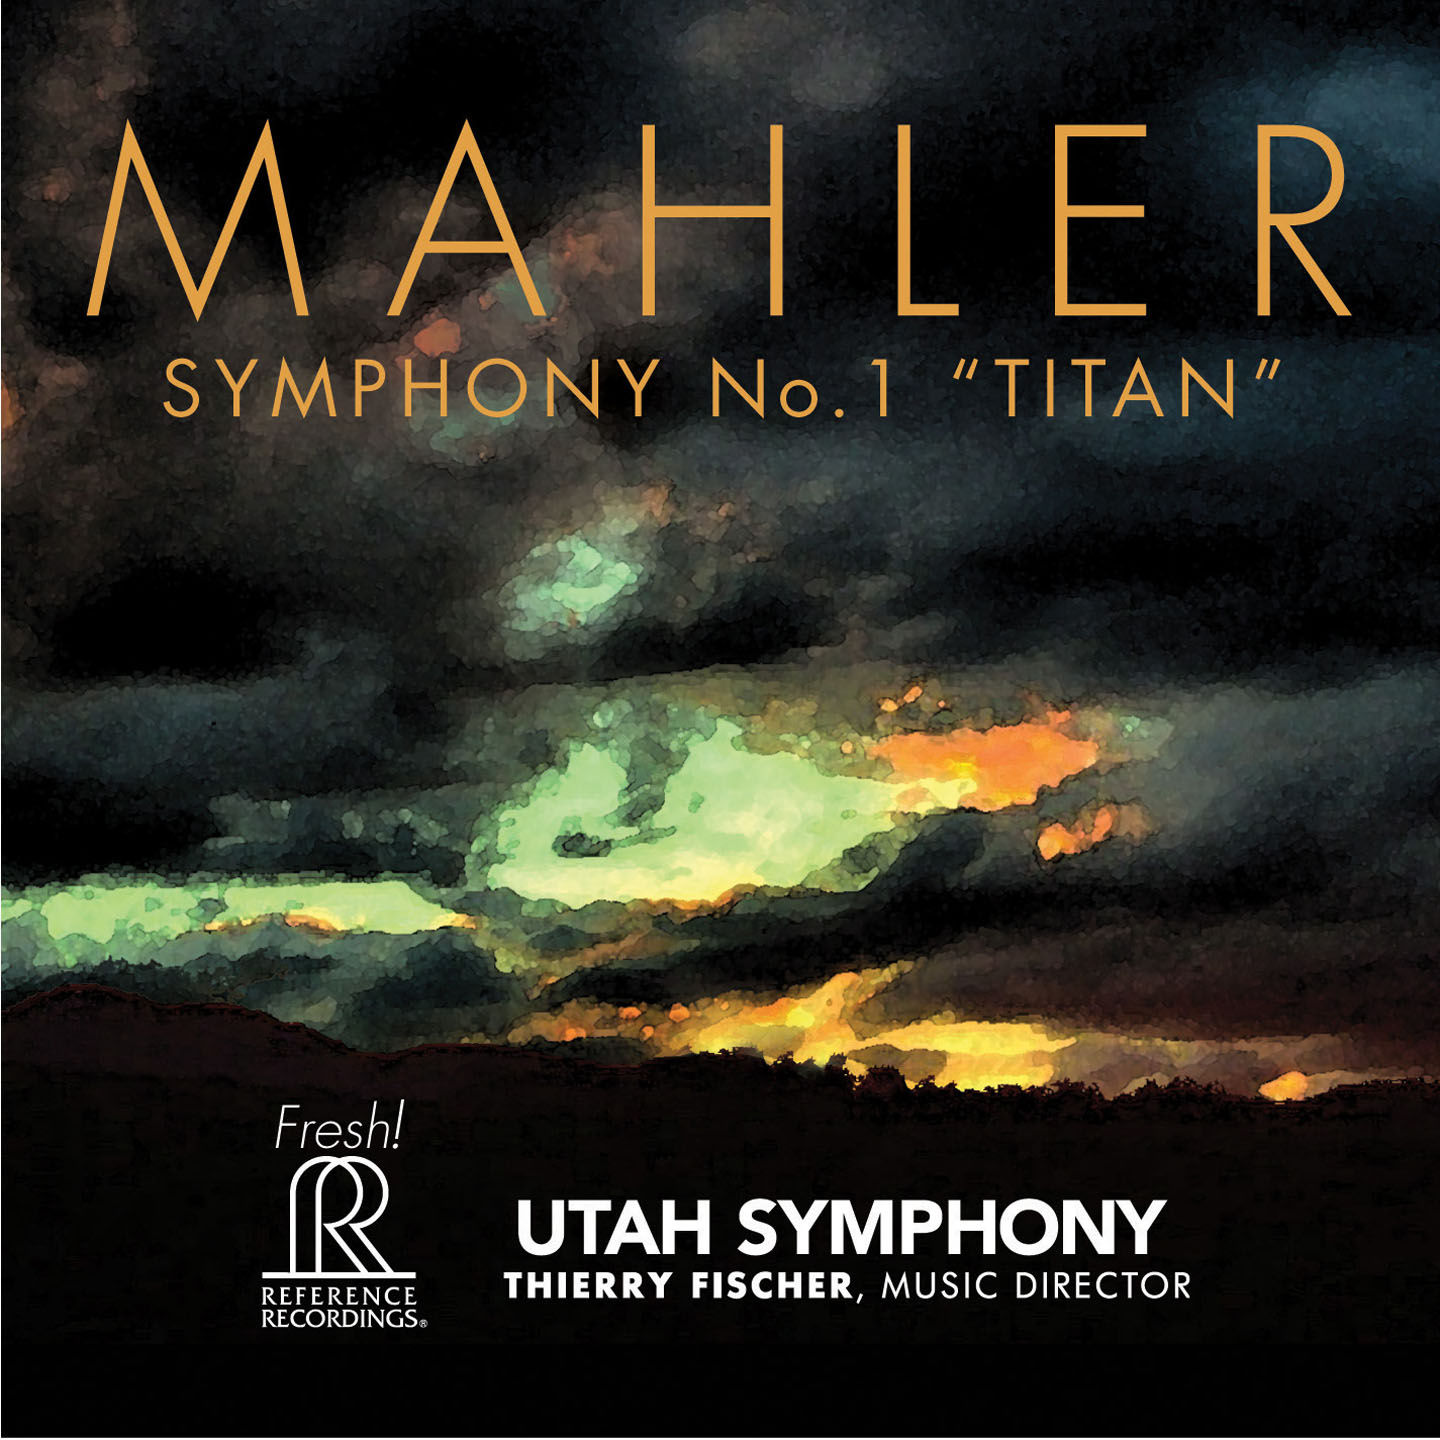 Utah Symphony Orchestra – Symphony No. 1 in D Major -Titan- (Live)